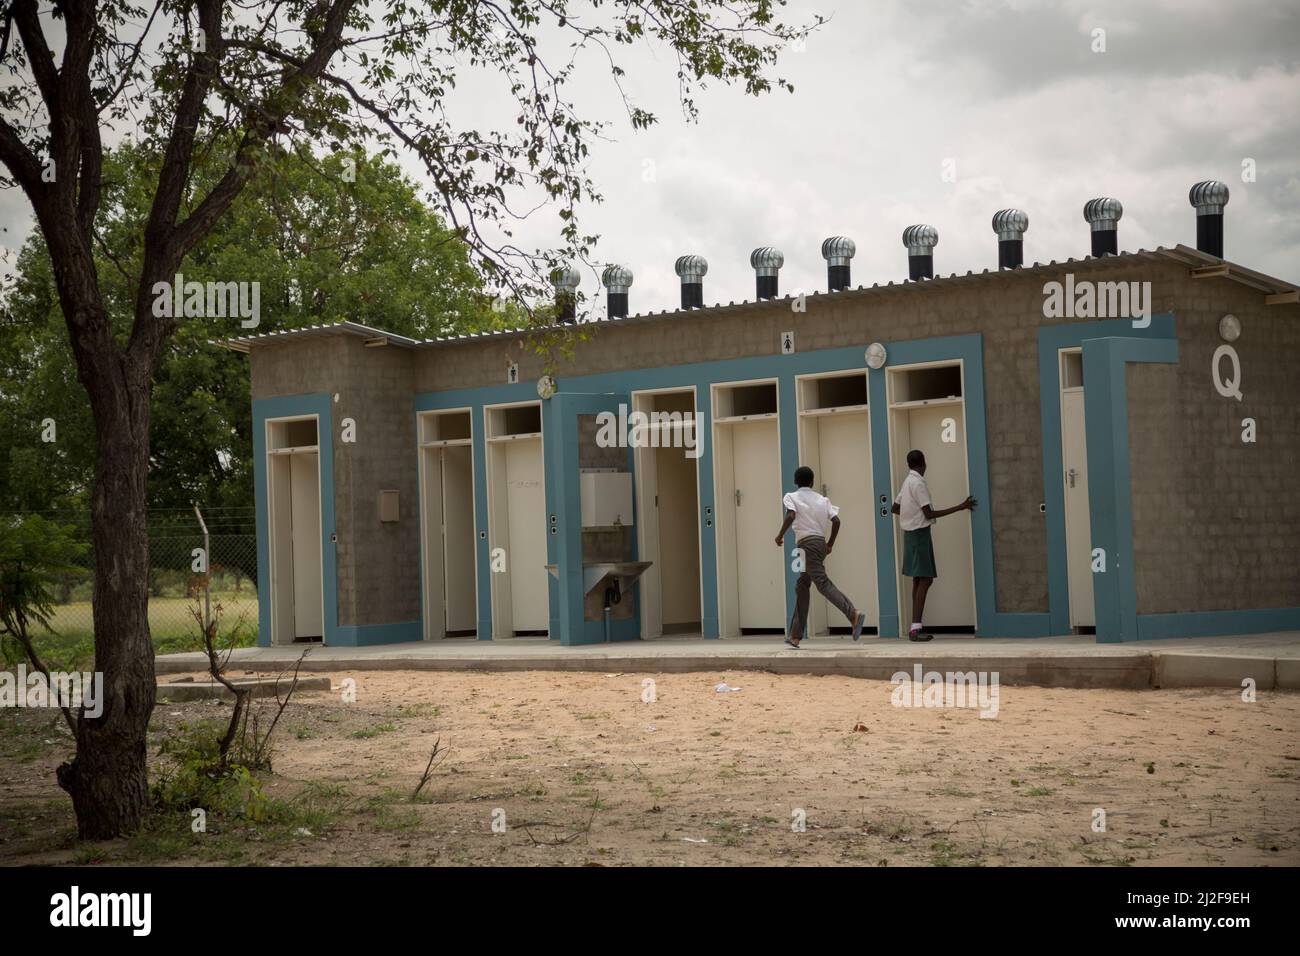 Les élèves utilisent de nouvelles toilettes de salle de bains - latrines à fosse extérieure - dans une école primaire publique de la région d'Oshana, en Namibie, en Afrique australe. Banque D'Images